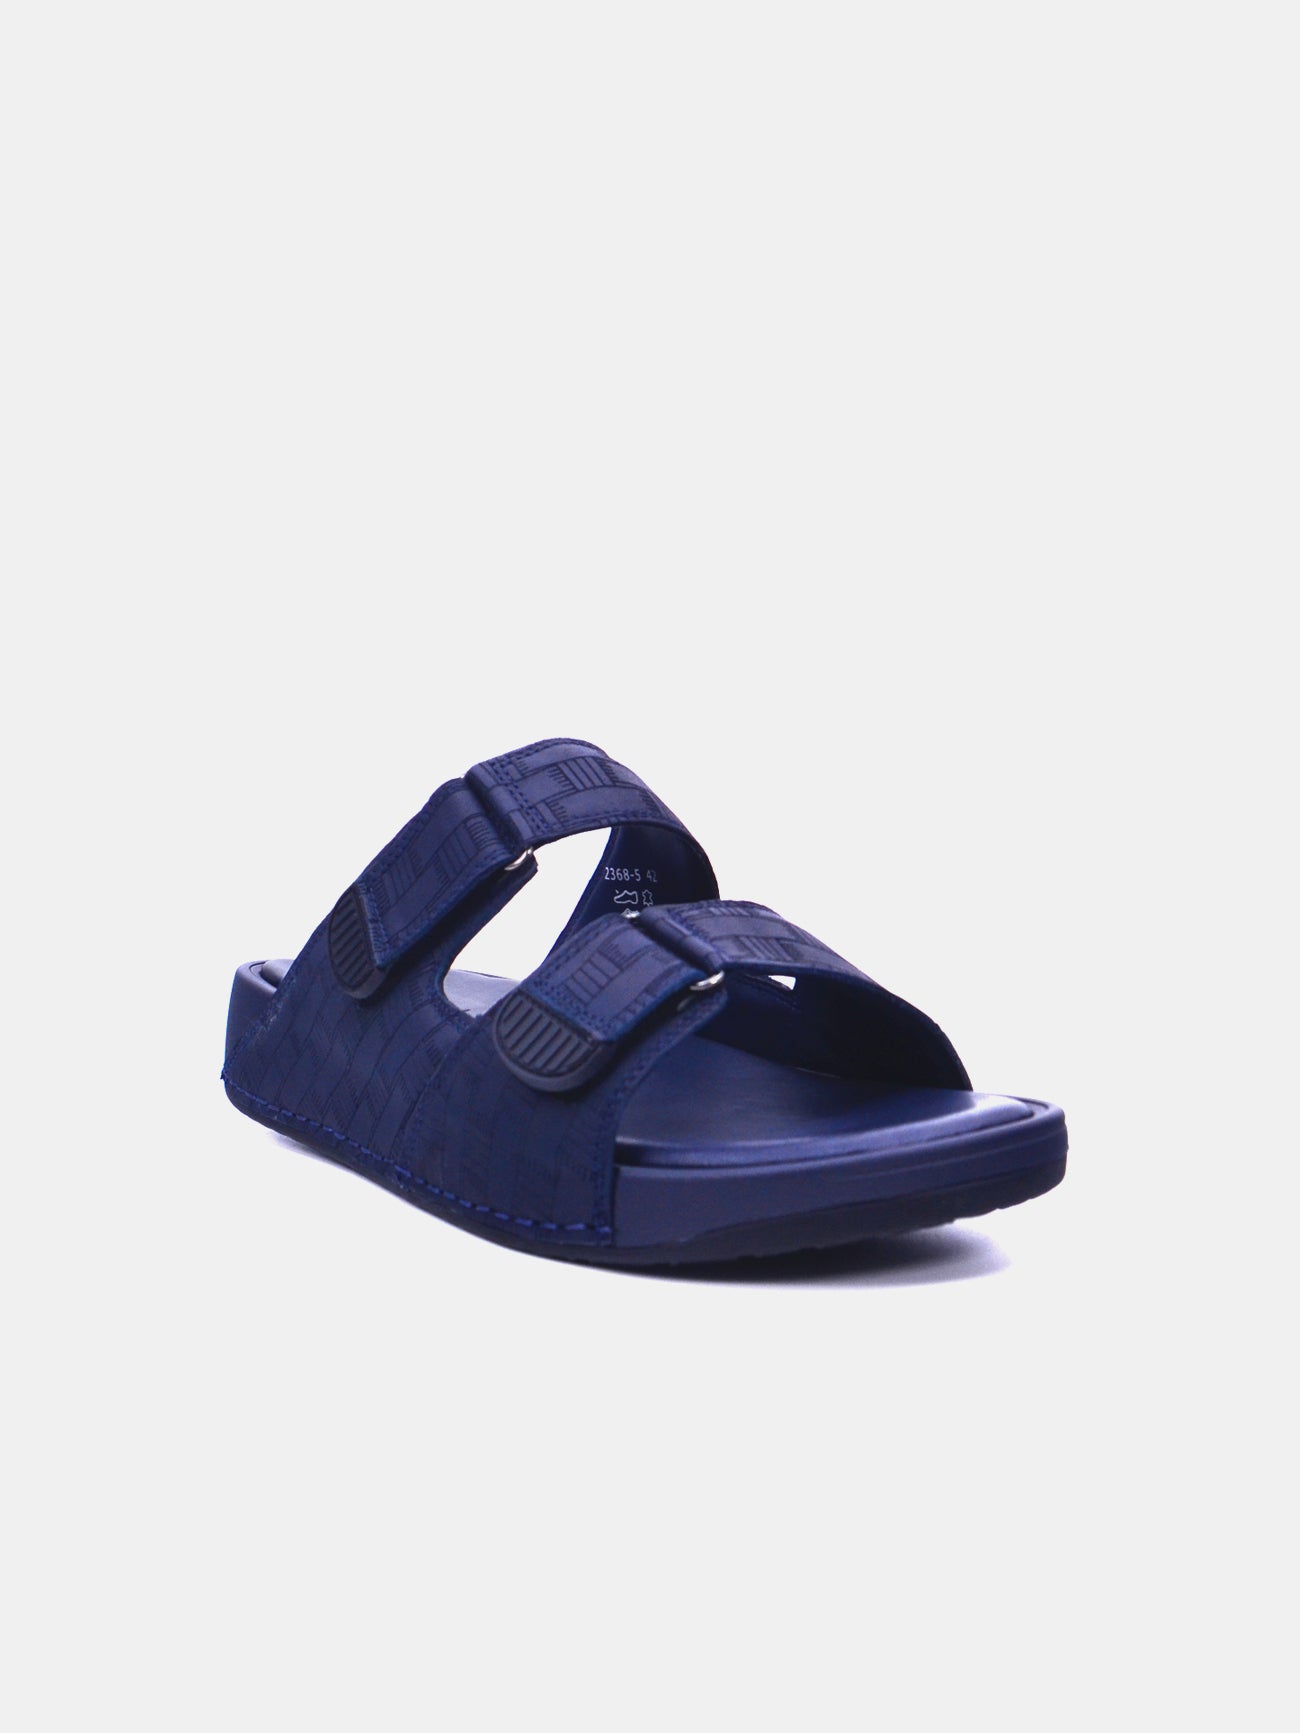 Barjeel Uno 2368-5 Men's Arabic Sandals